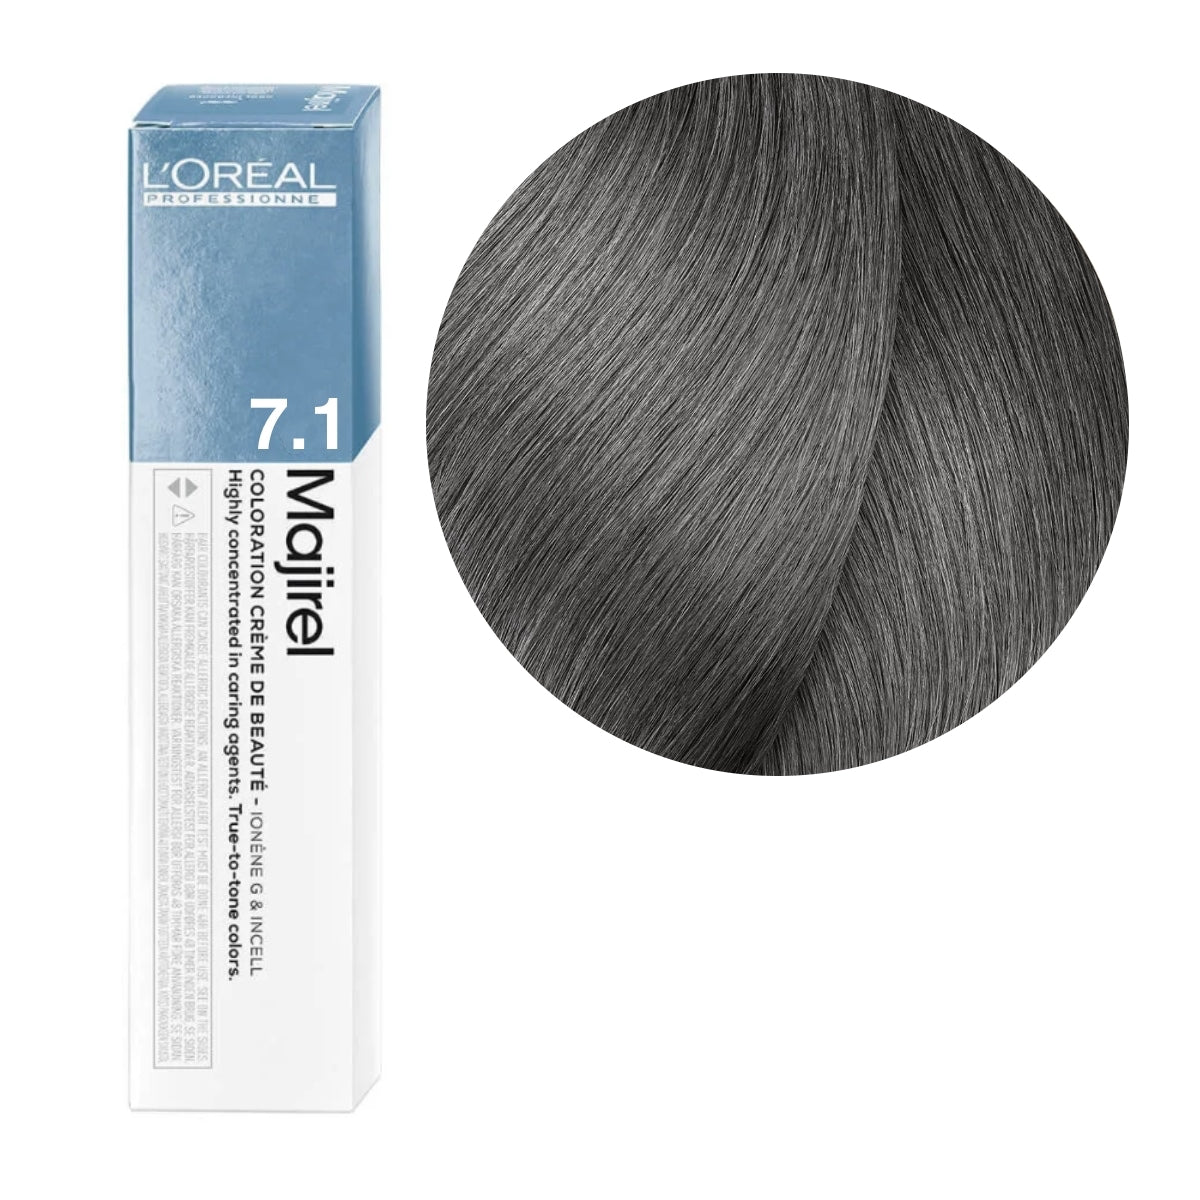 a box of lorel hair color in dark grey